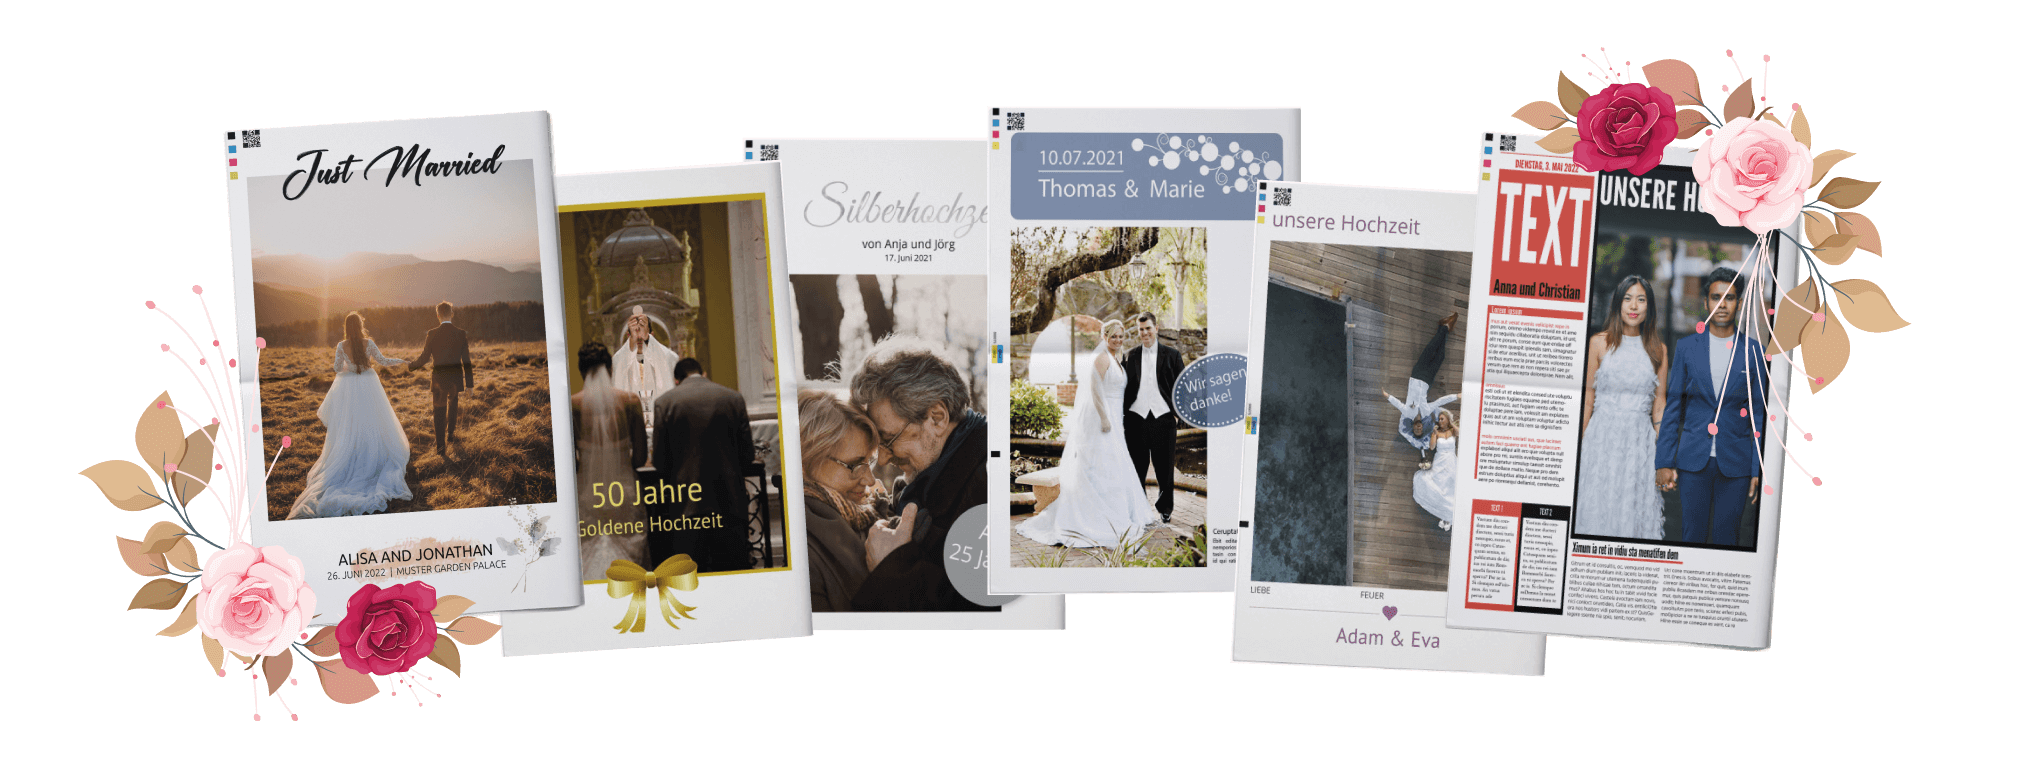 Hochzeitszeitung mit ABC der Liebe jetzt online gestalten